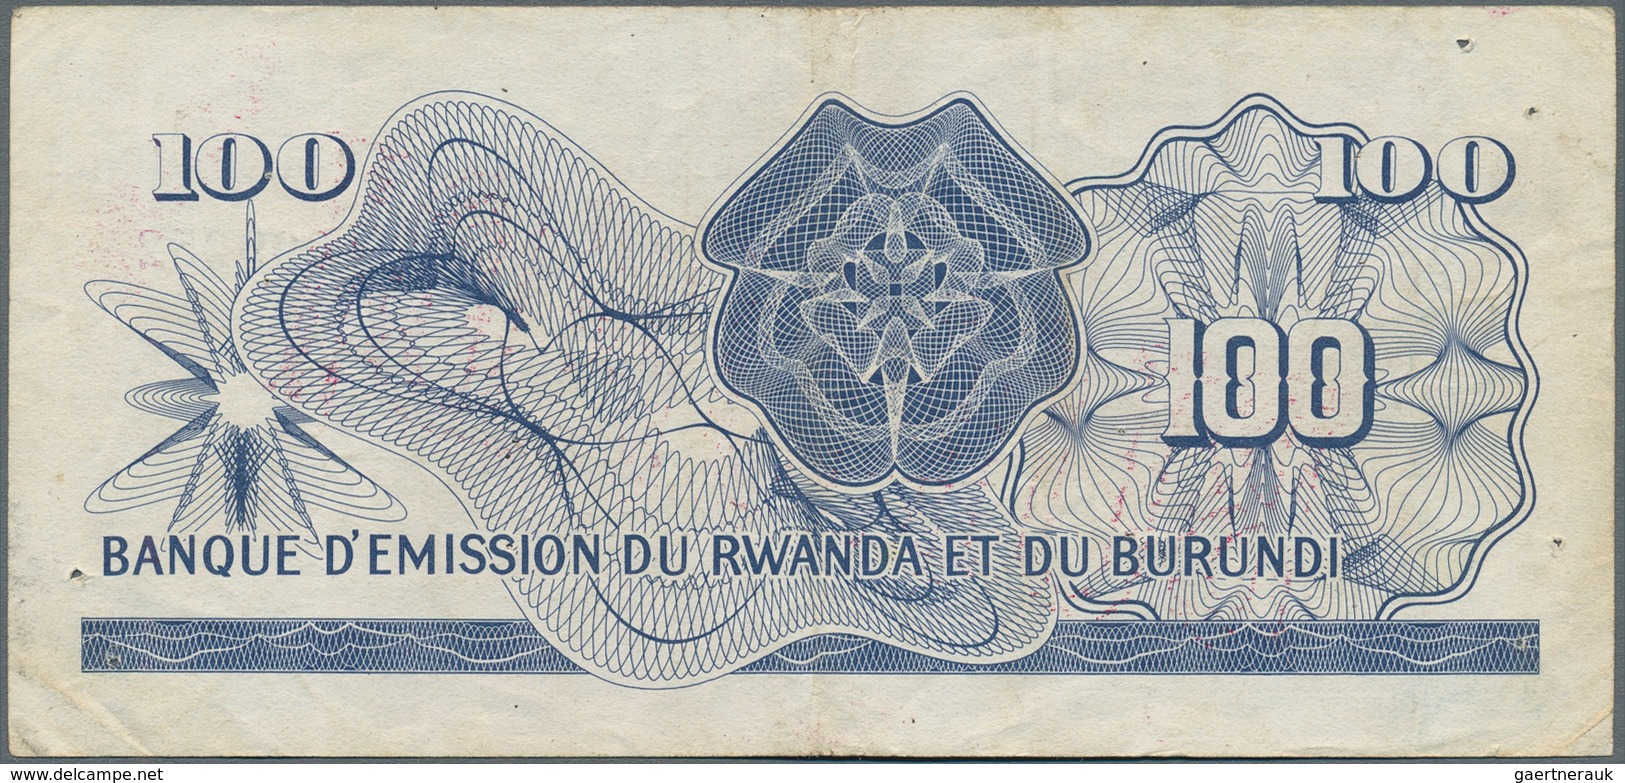 Burundi: Banque D'Émission Du Rwanda Et Du Burundi (Banque Du Royaume Du Burundi) 100 Francs July 31 - Burundi